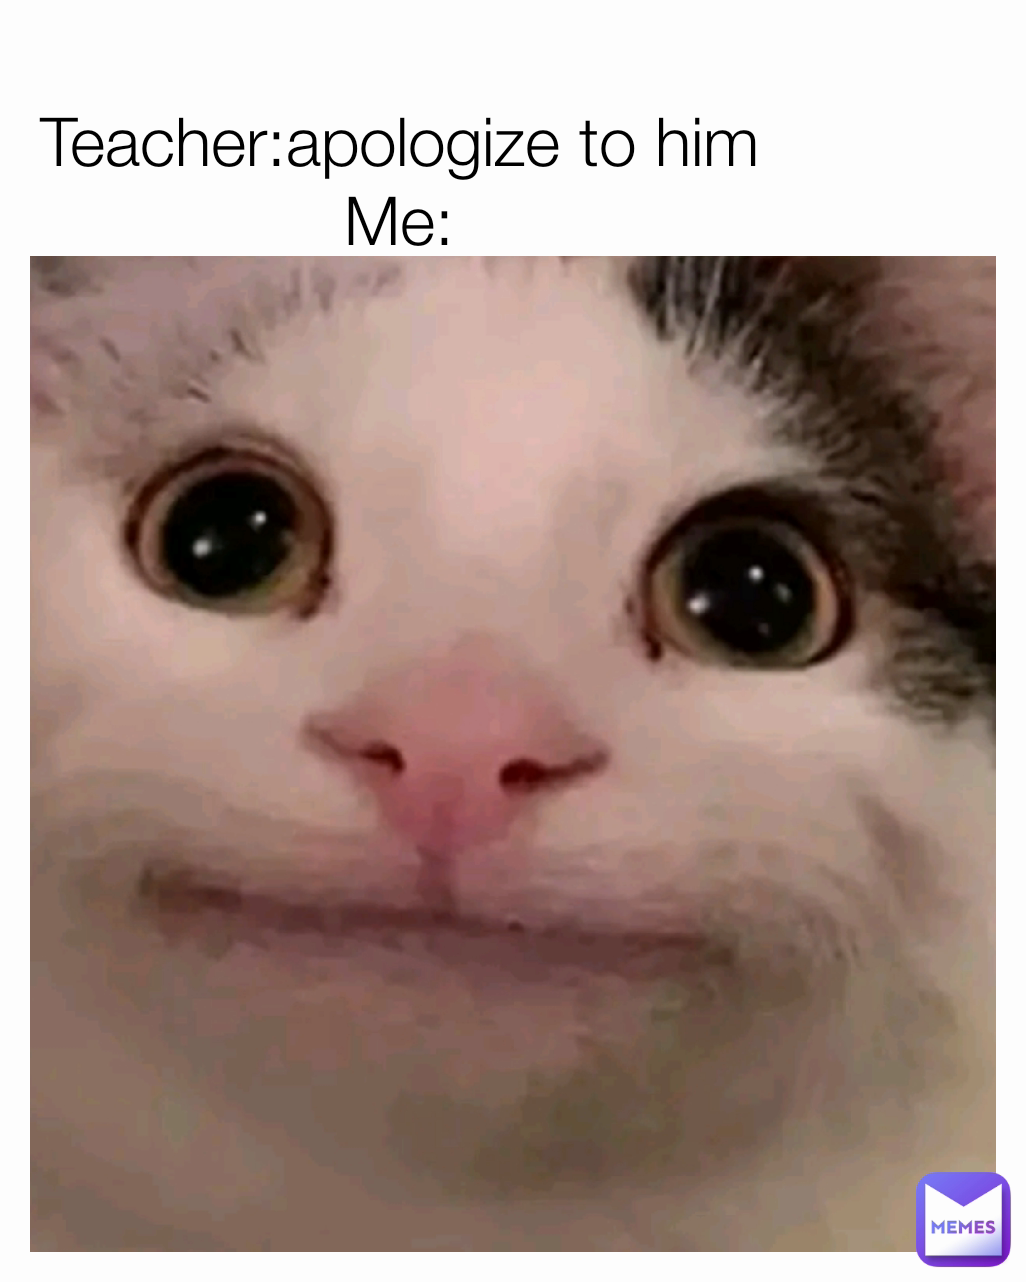 Teacher:apologize to him
Me: